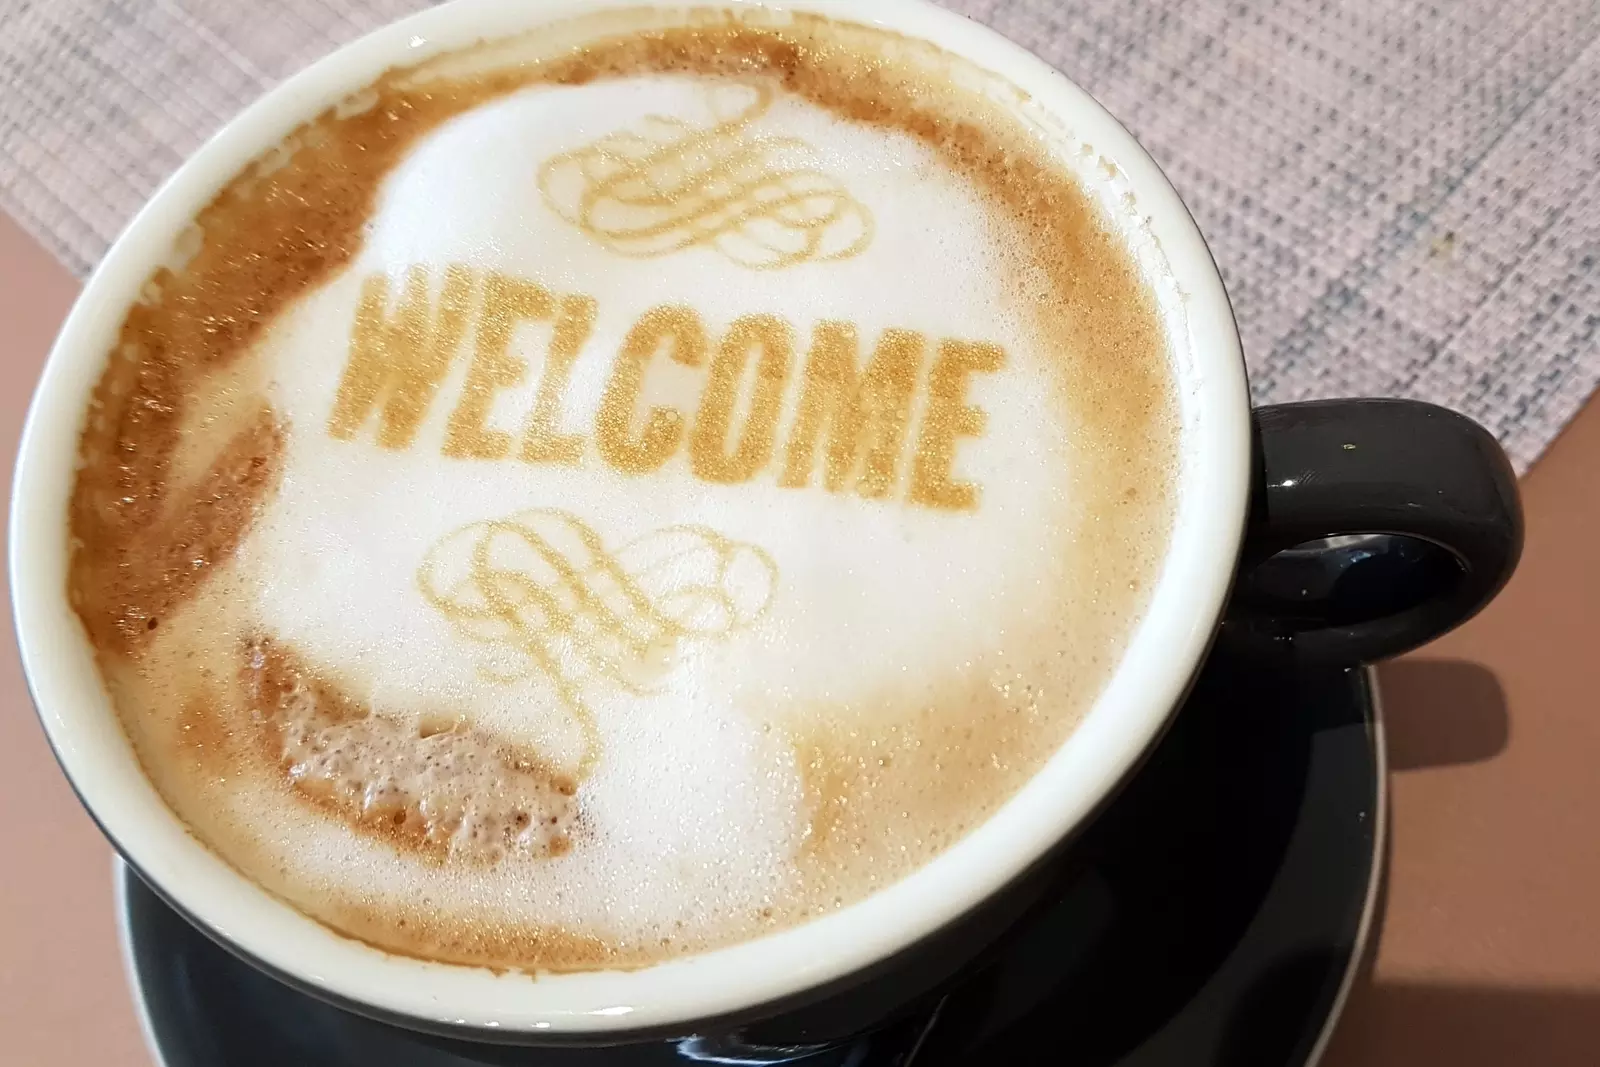 Welcome Coffee